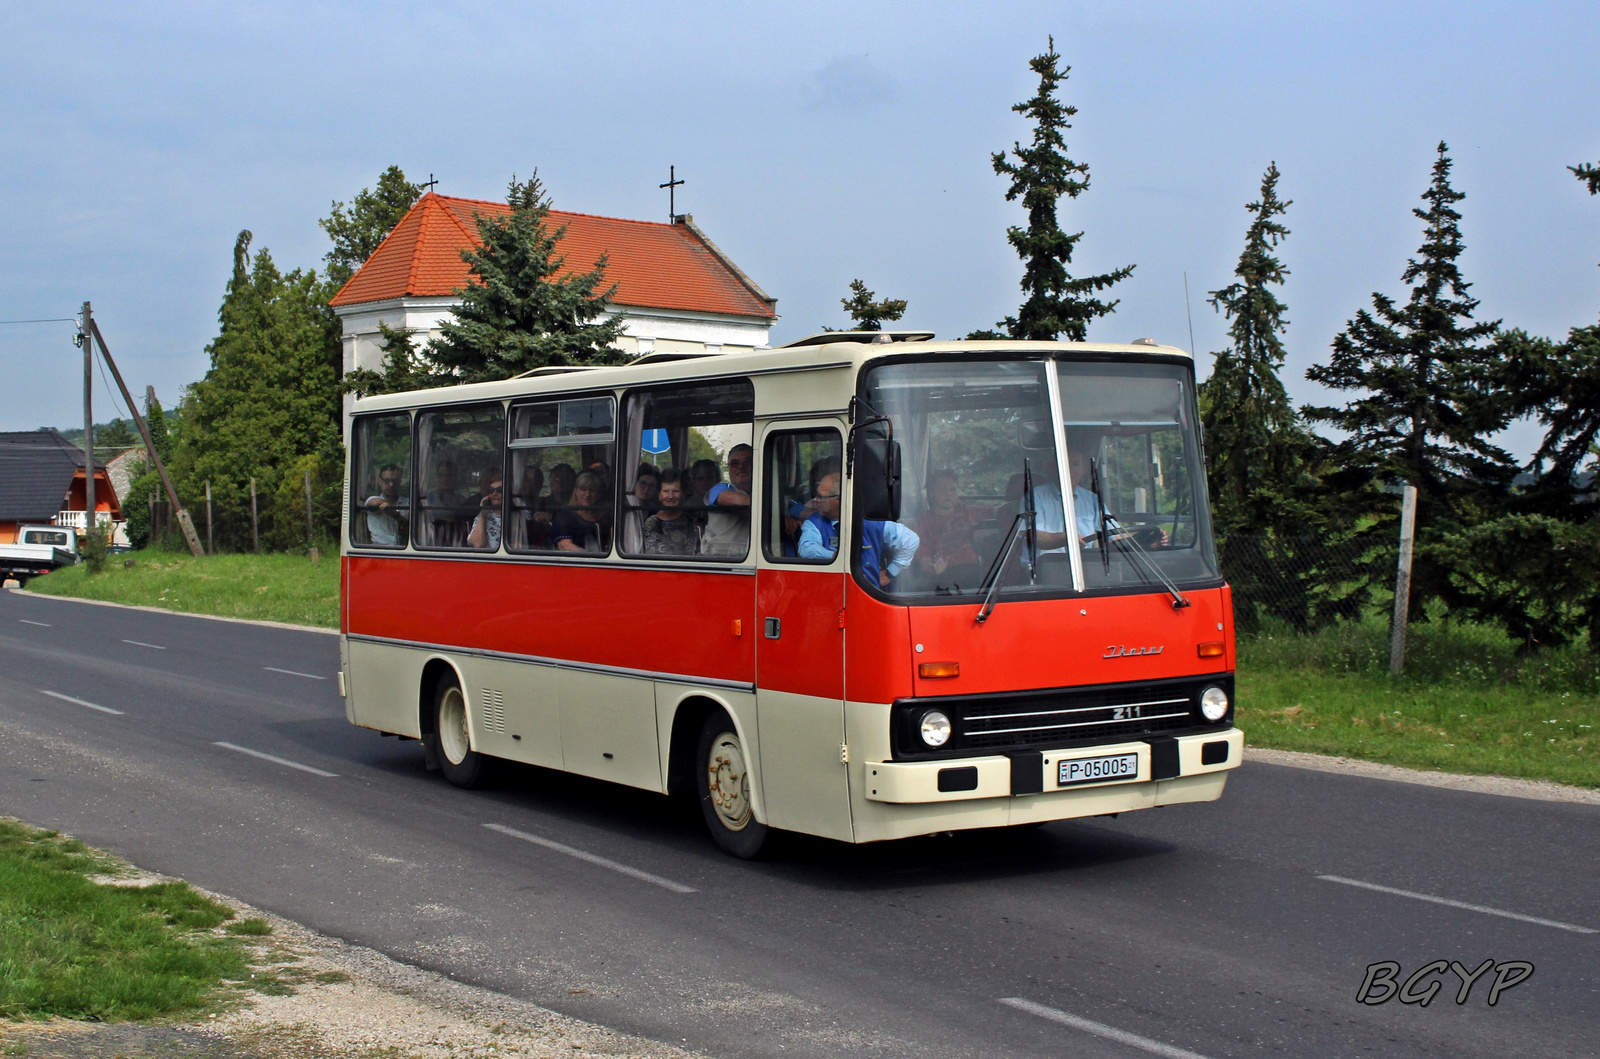 Ikarus 211 (P-05005)